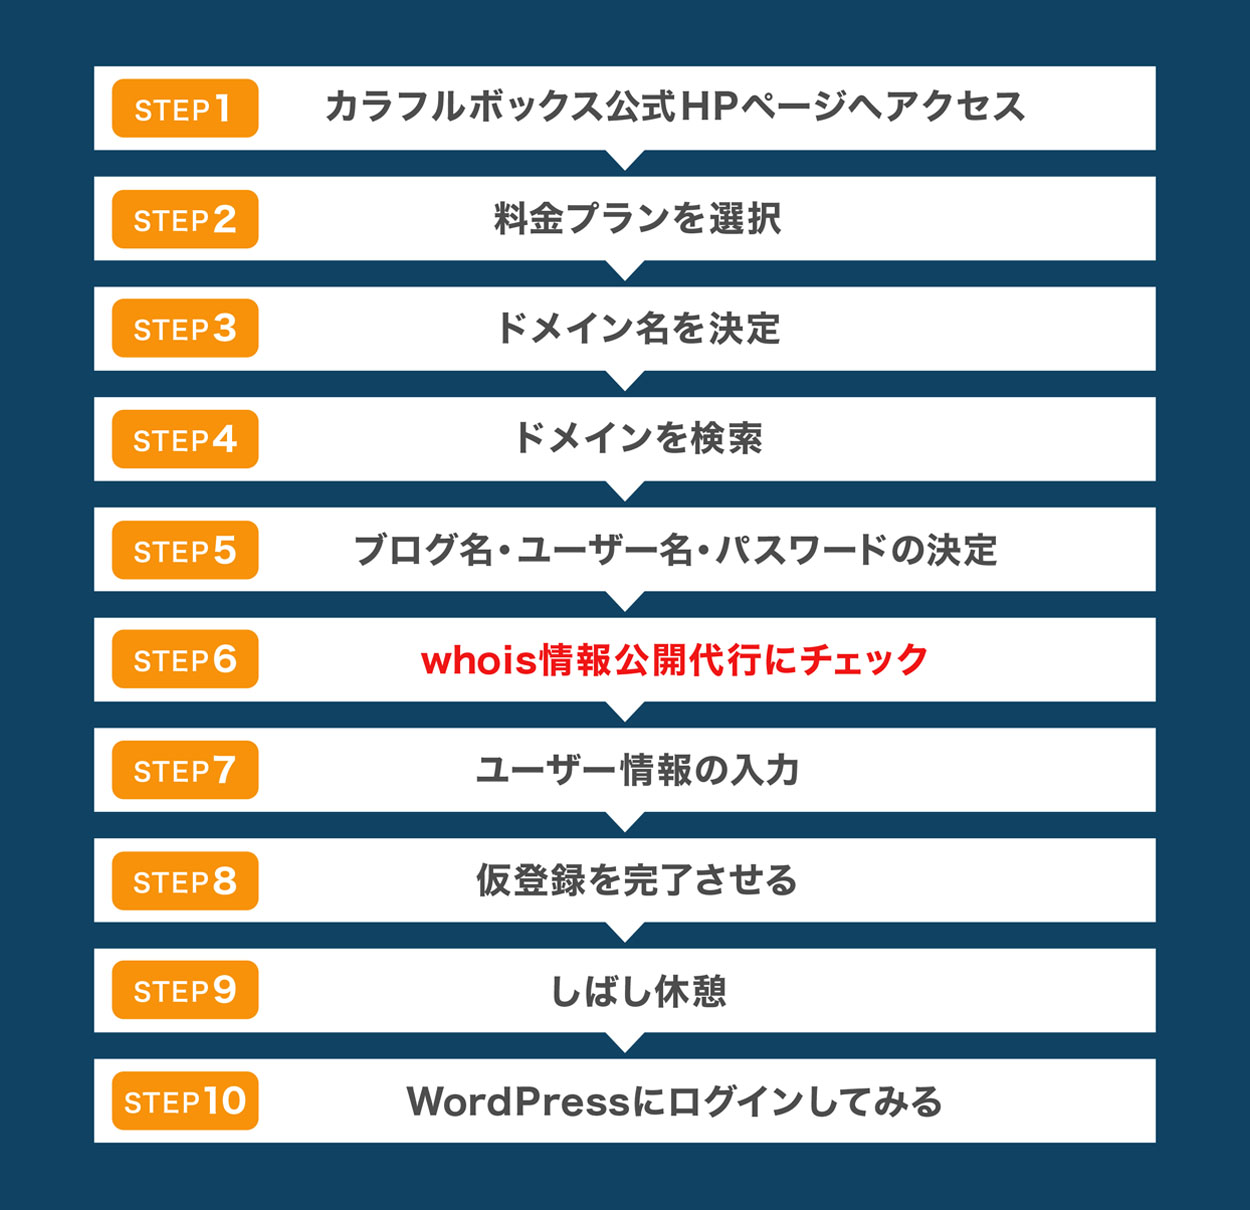 日本で一番簡単なWordPressブログの設定方法